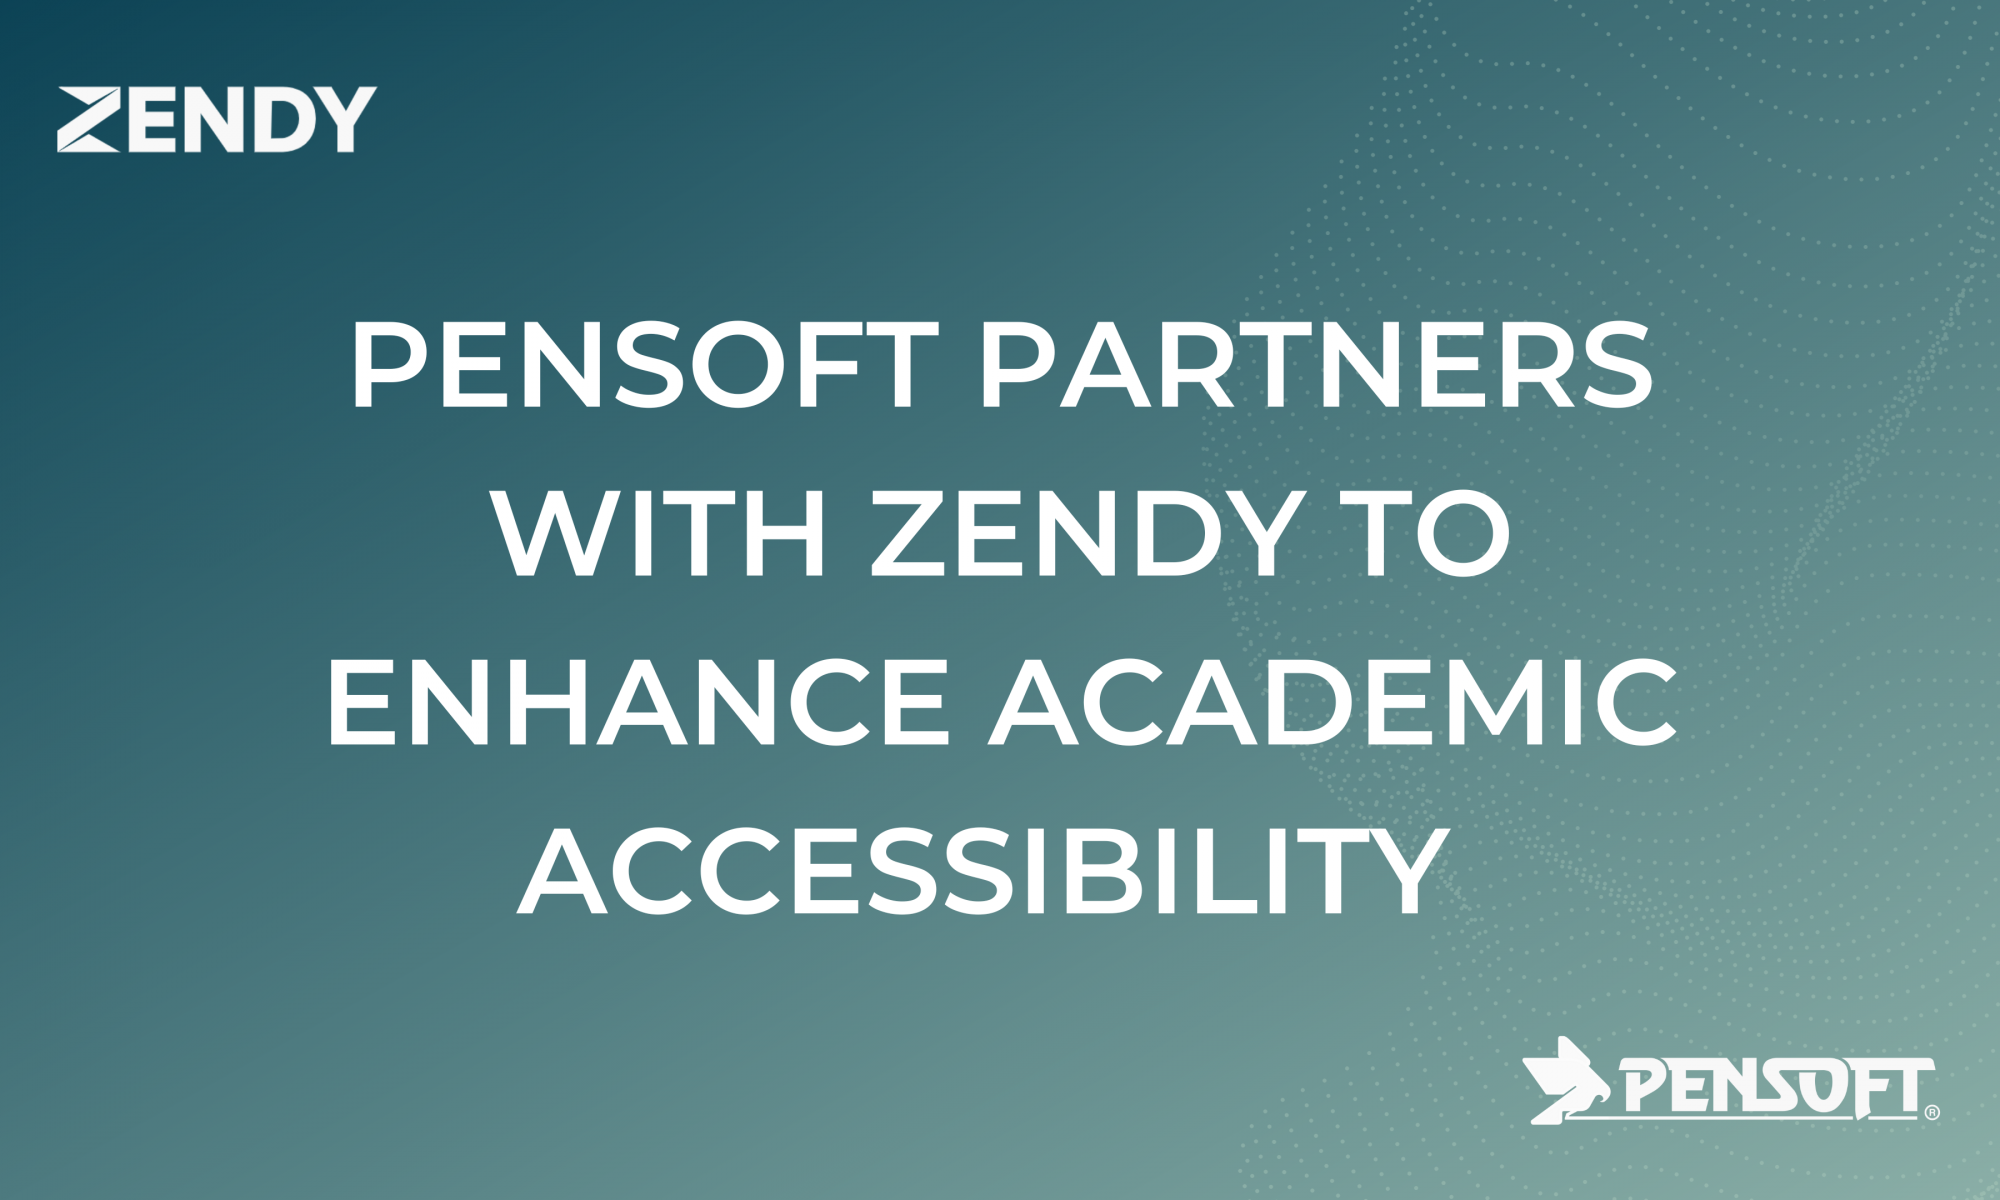 Zendy and Pensoft partnership